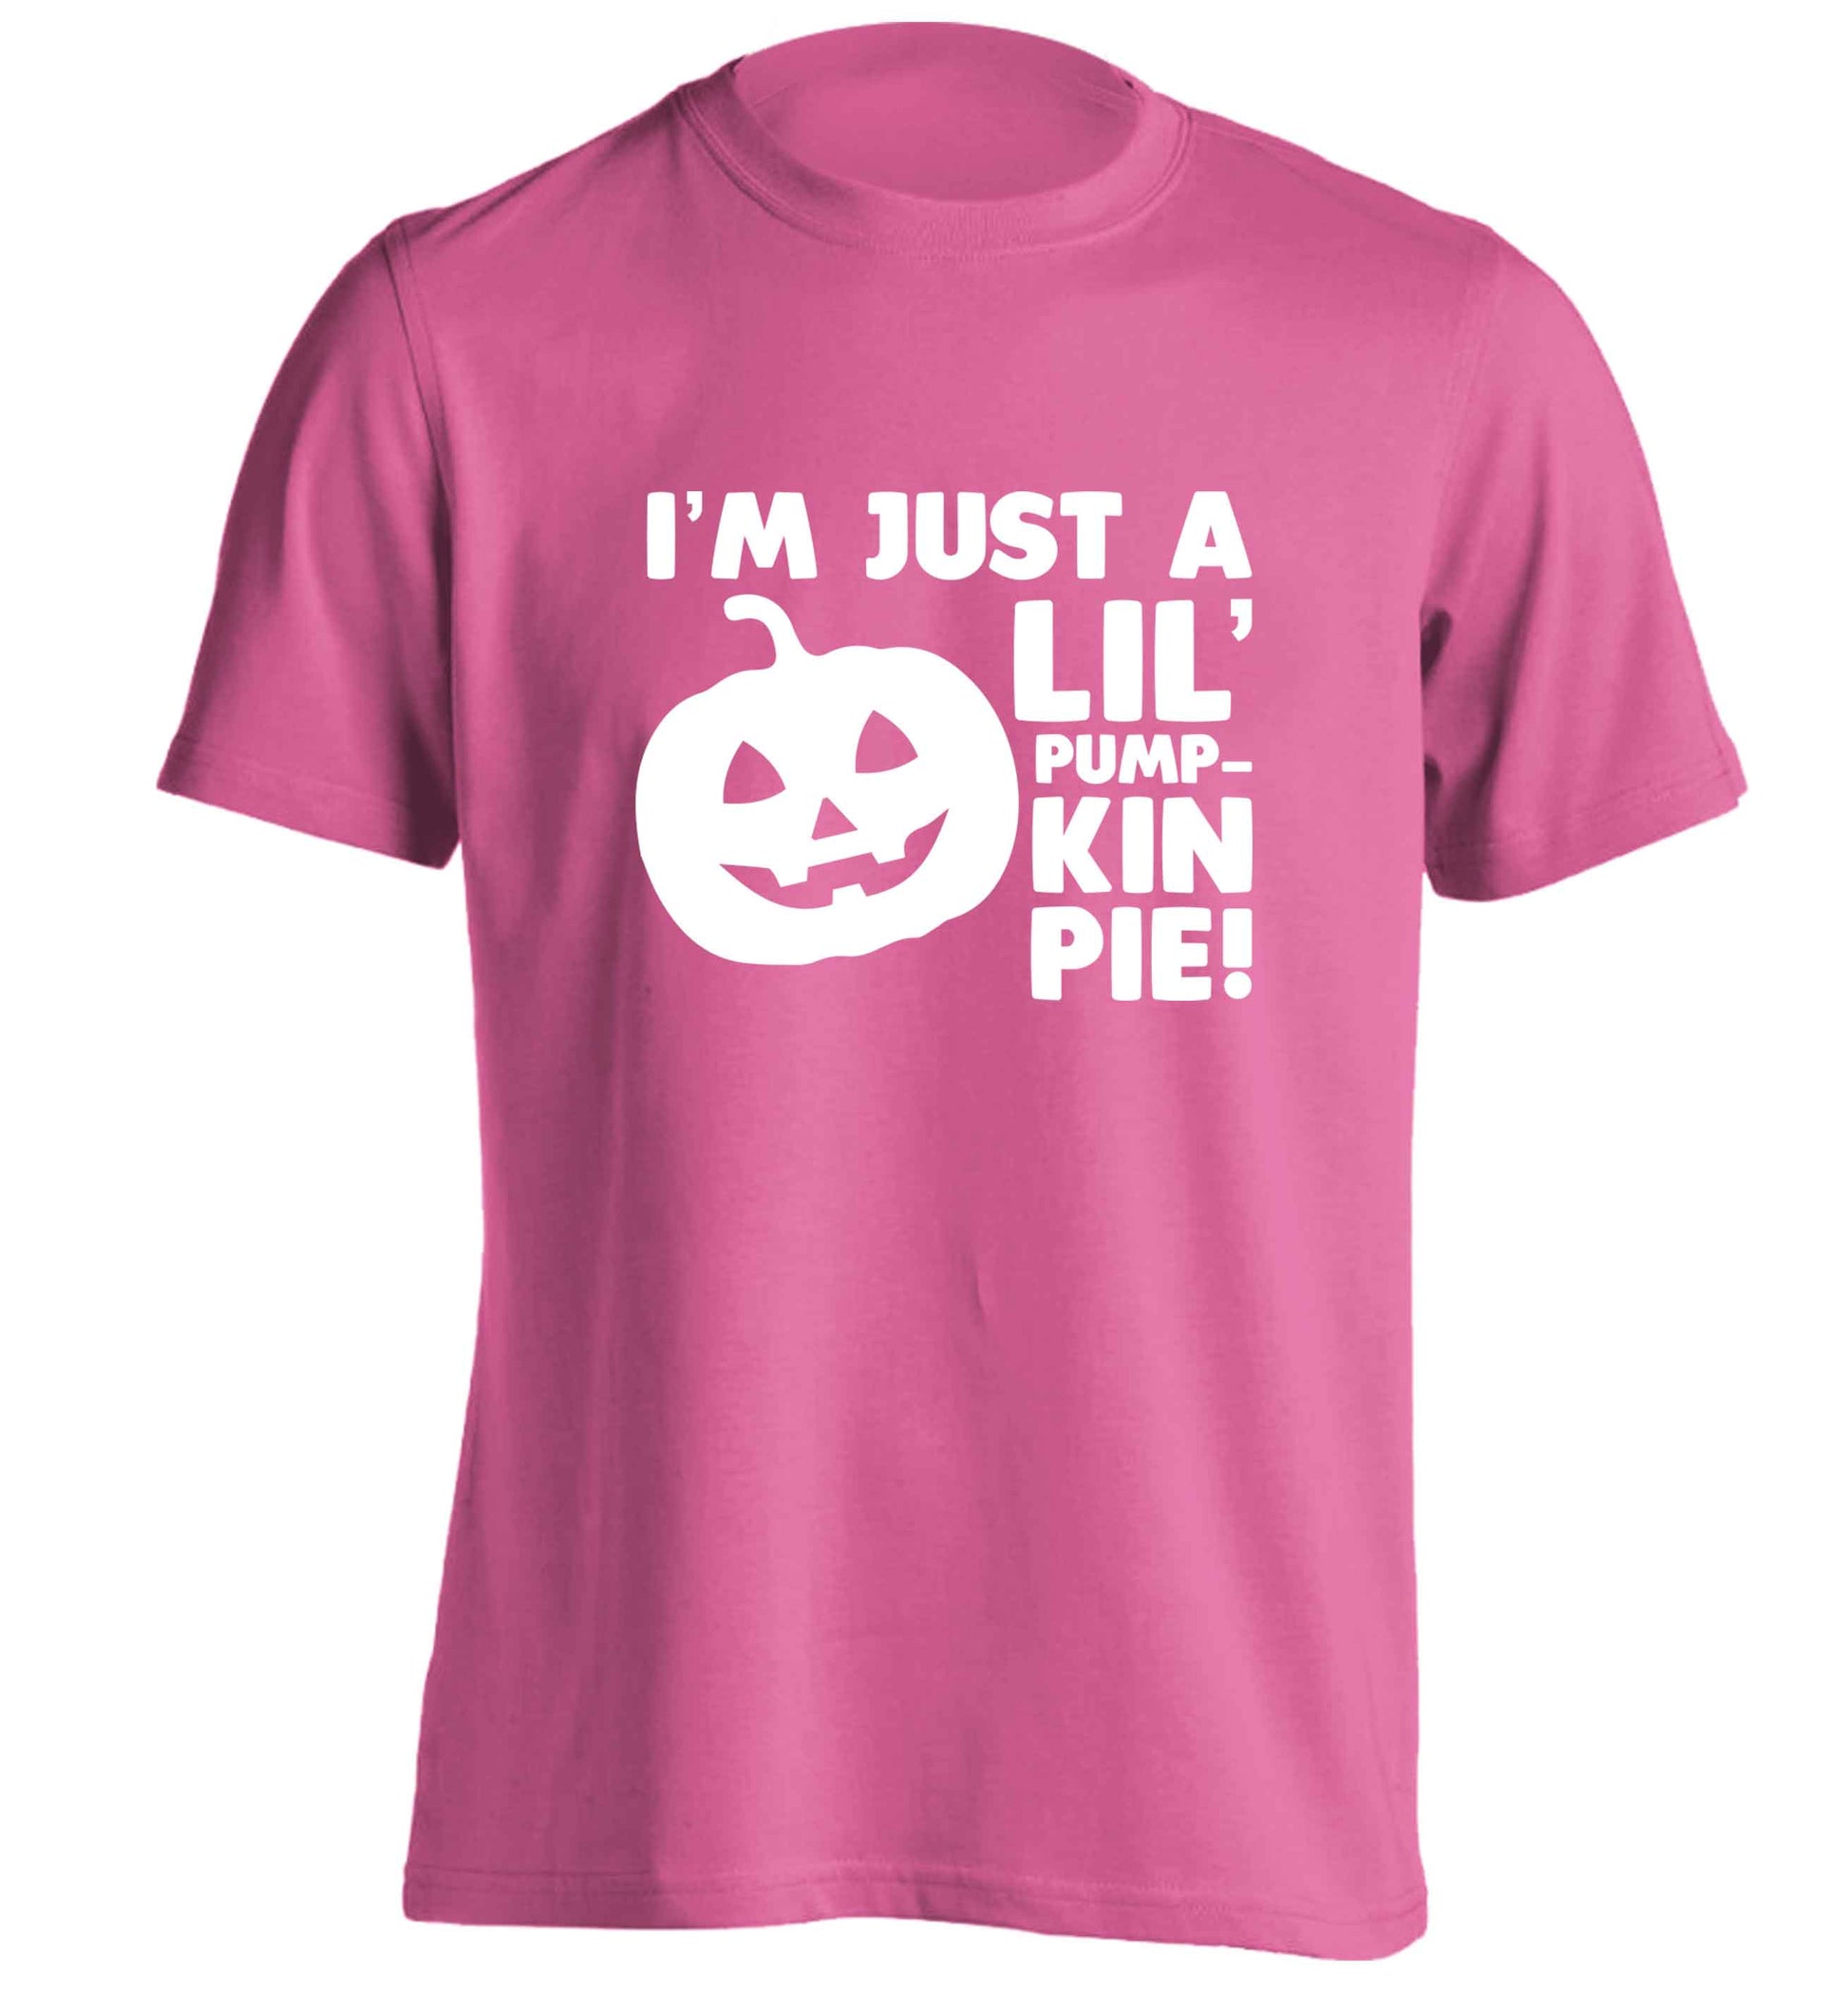 I'm just a lil' pumpkin pie adults unisex pink Tshirt 2XL